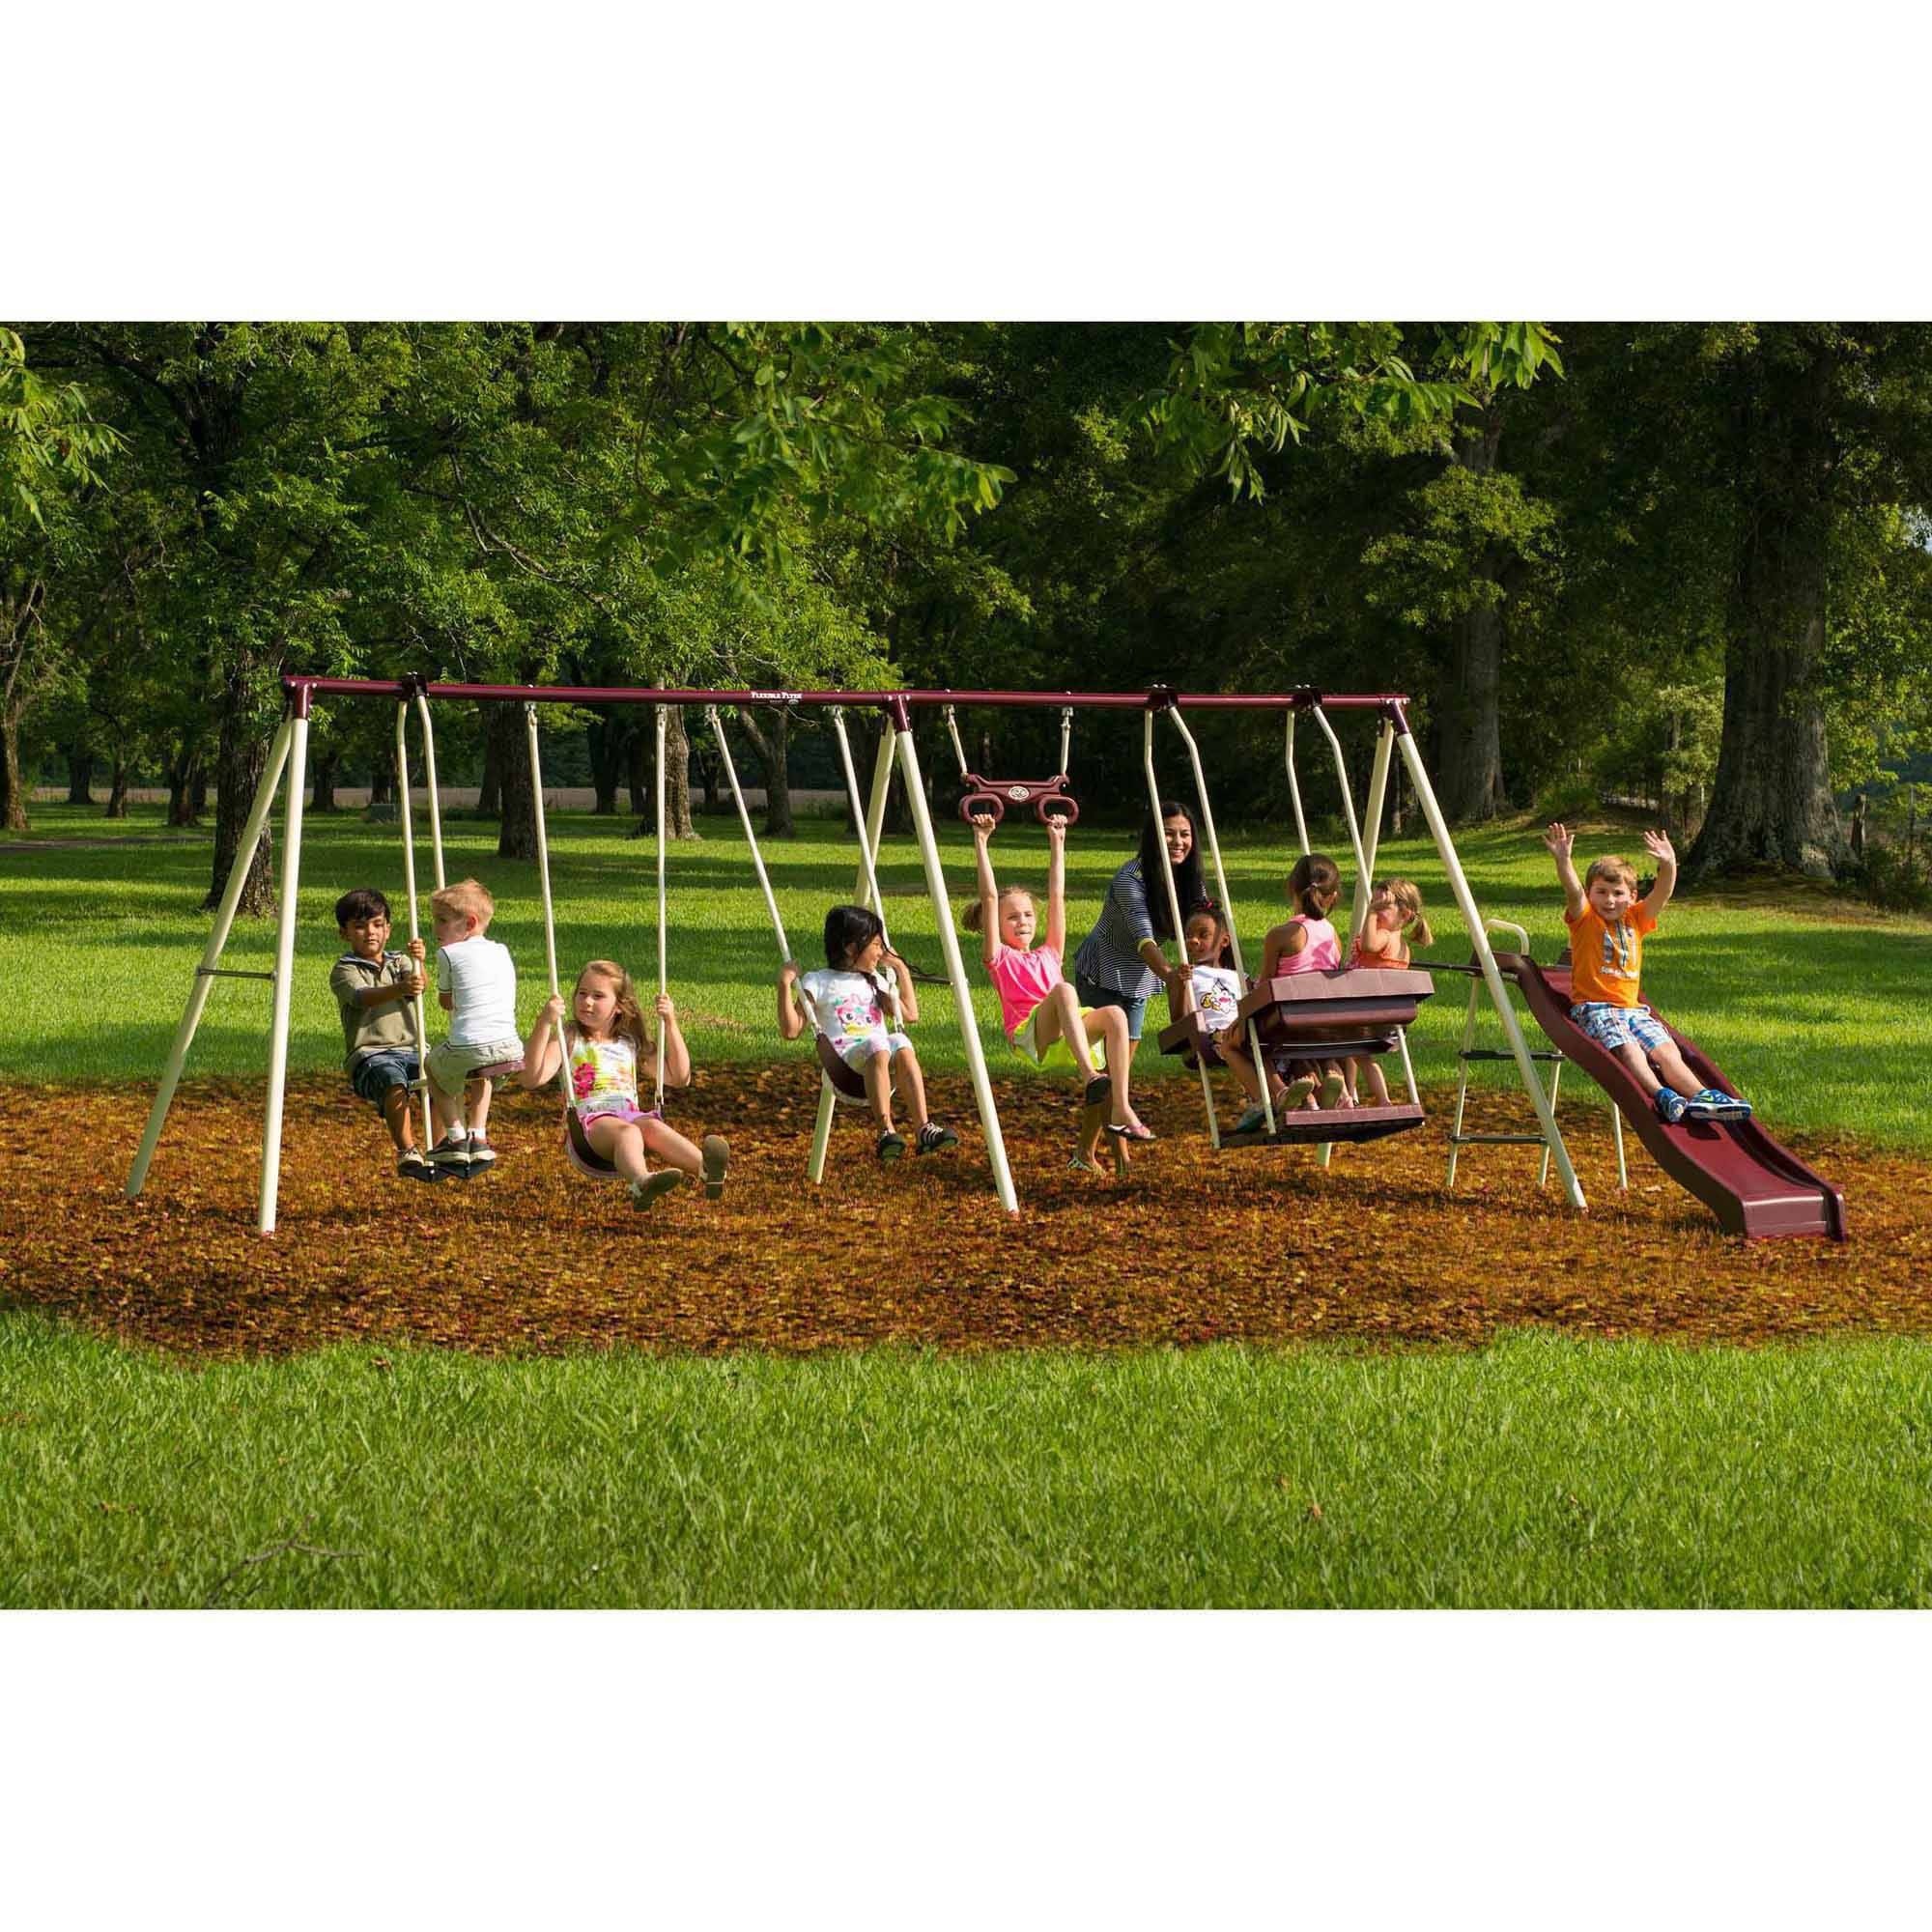 Flexible flyer play park flyer outdoor metal swing set